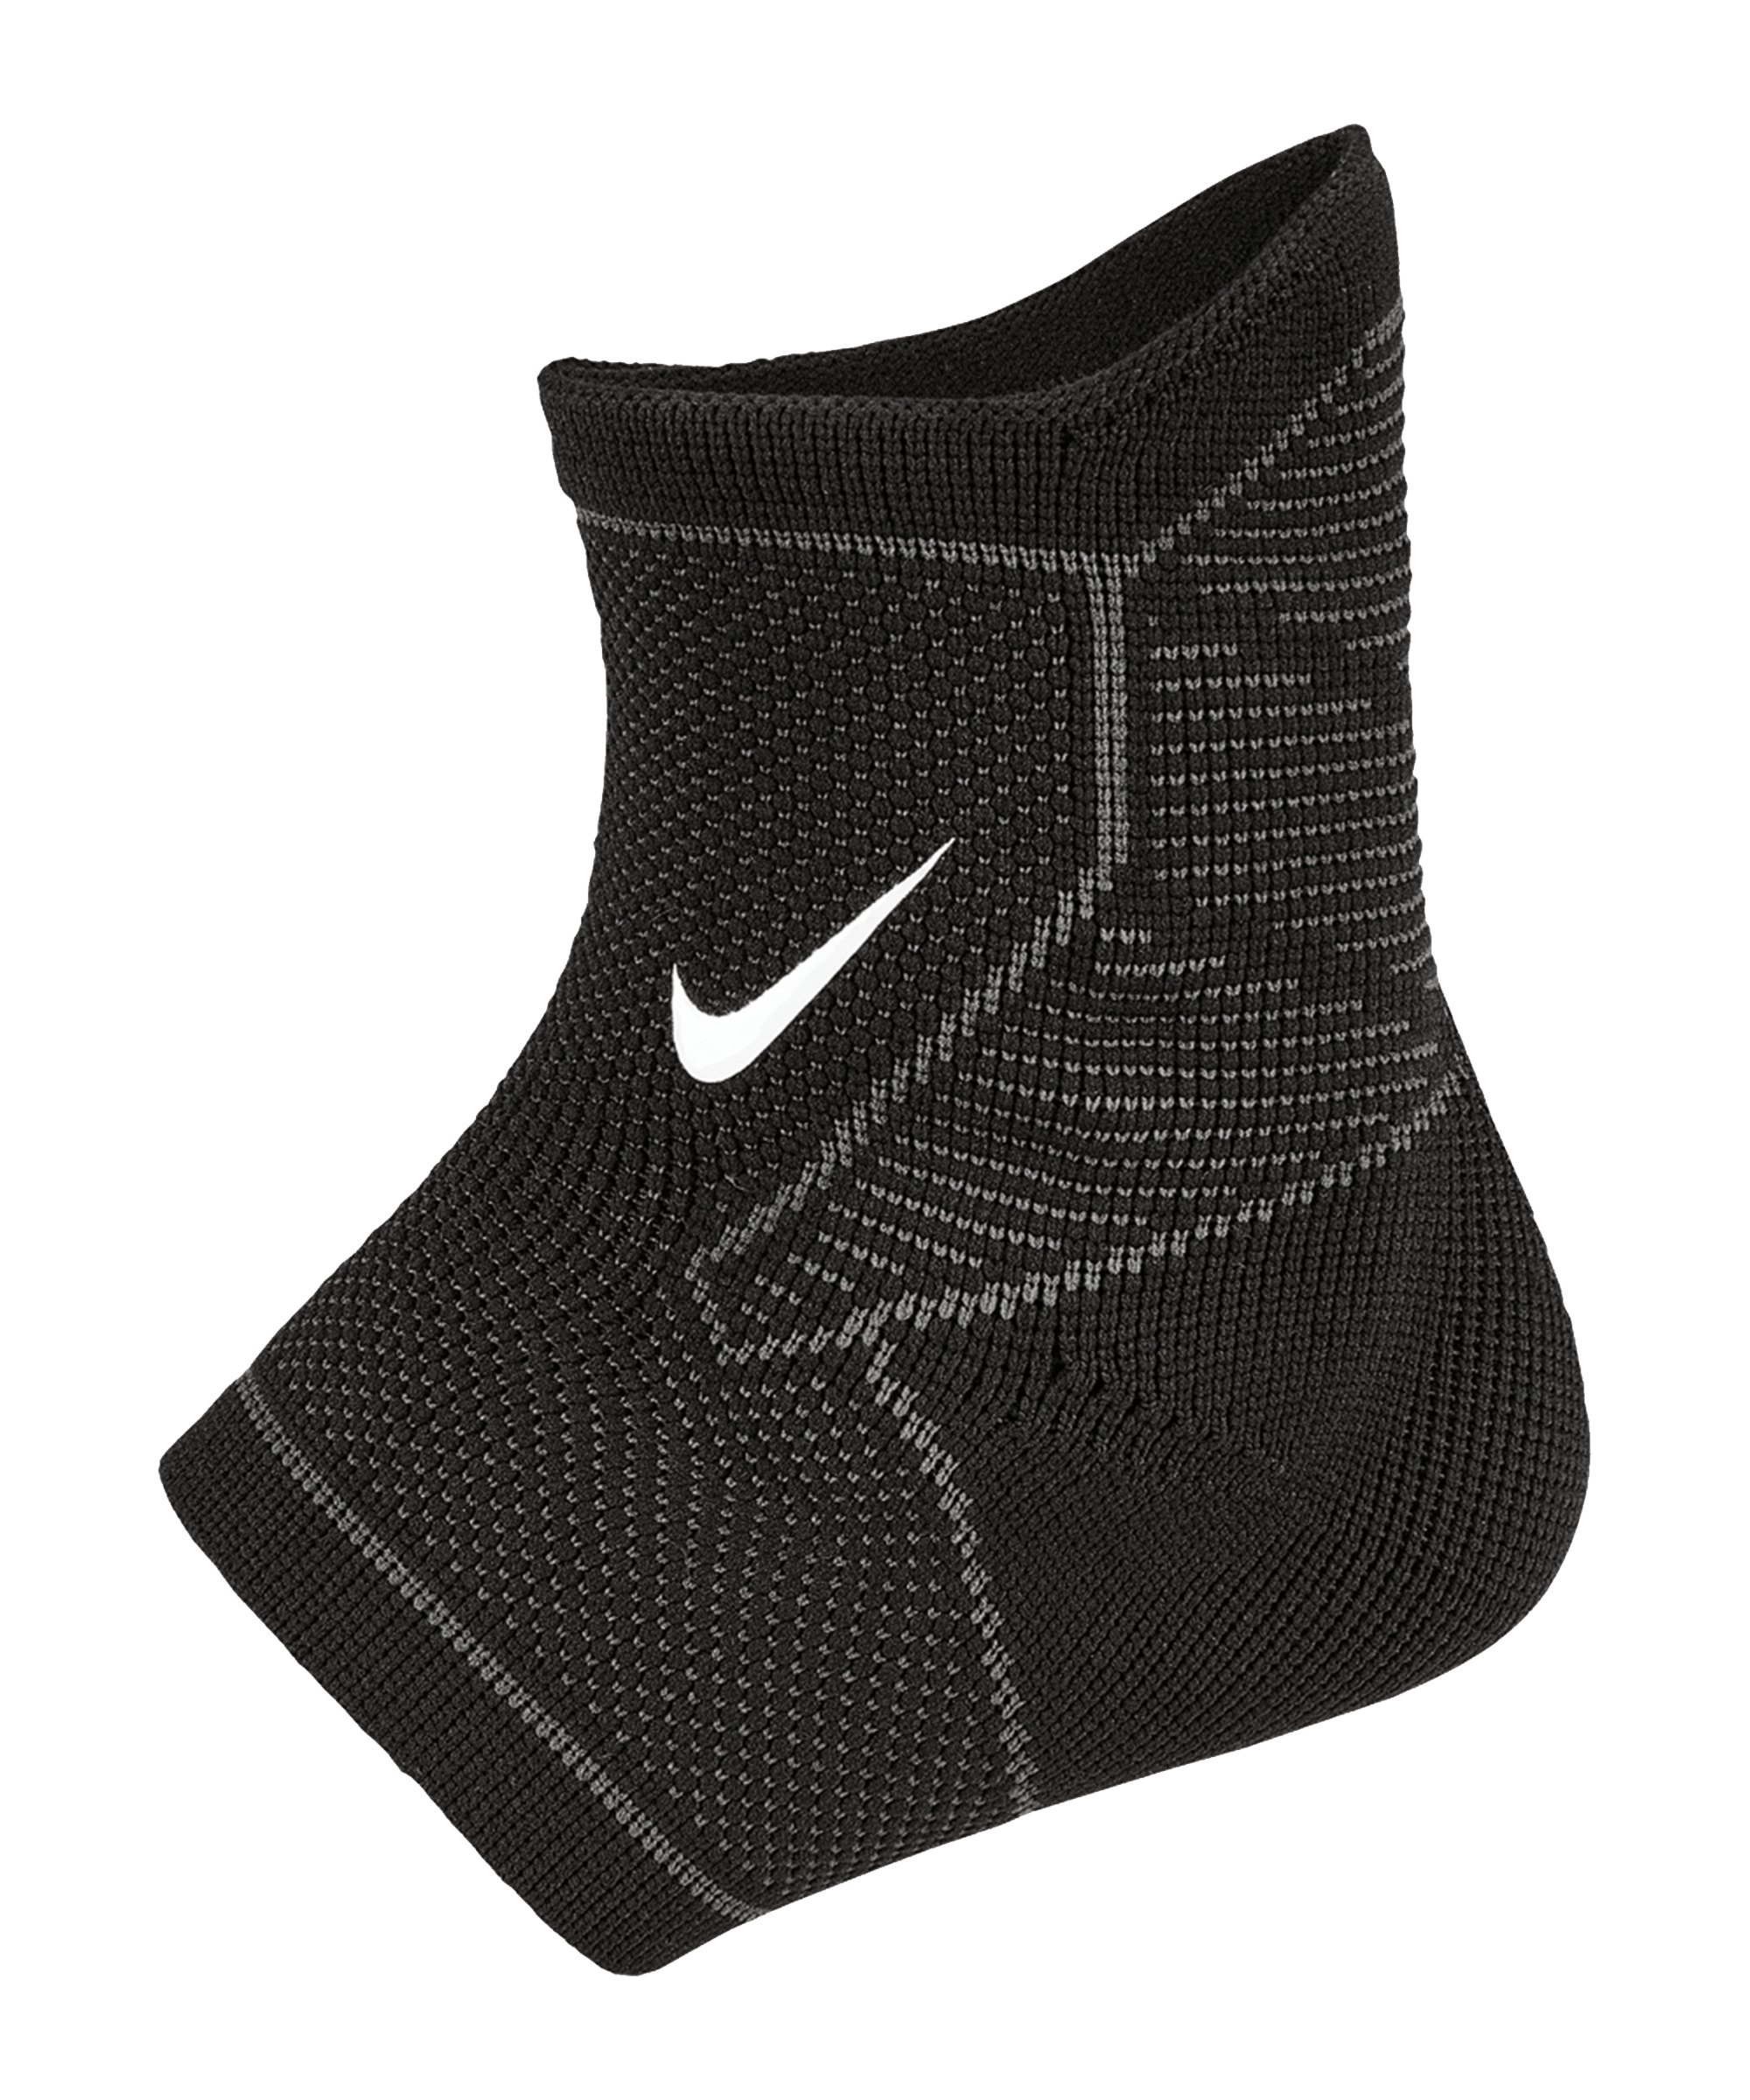 Nike Pro Ankle Sleeve Schwarz Grau F031 - schwarz